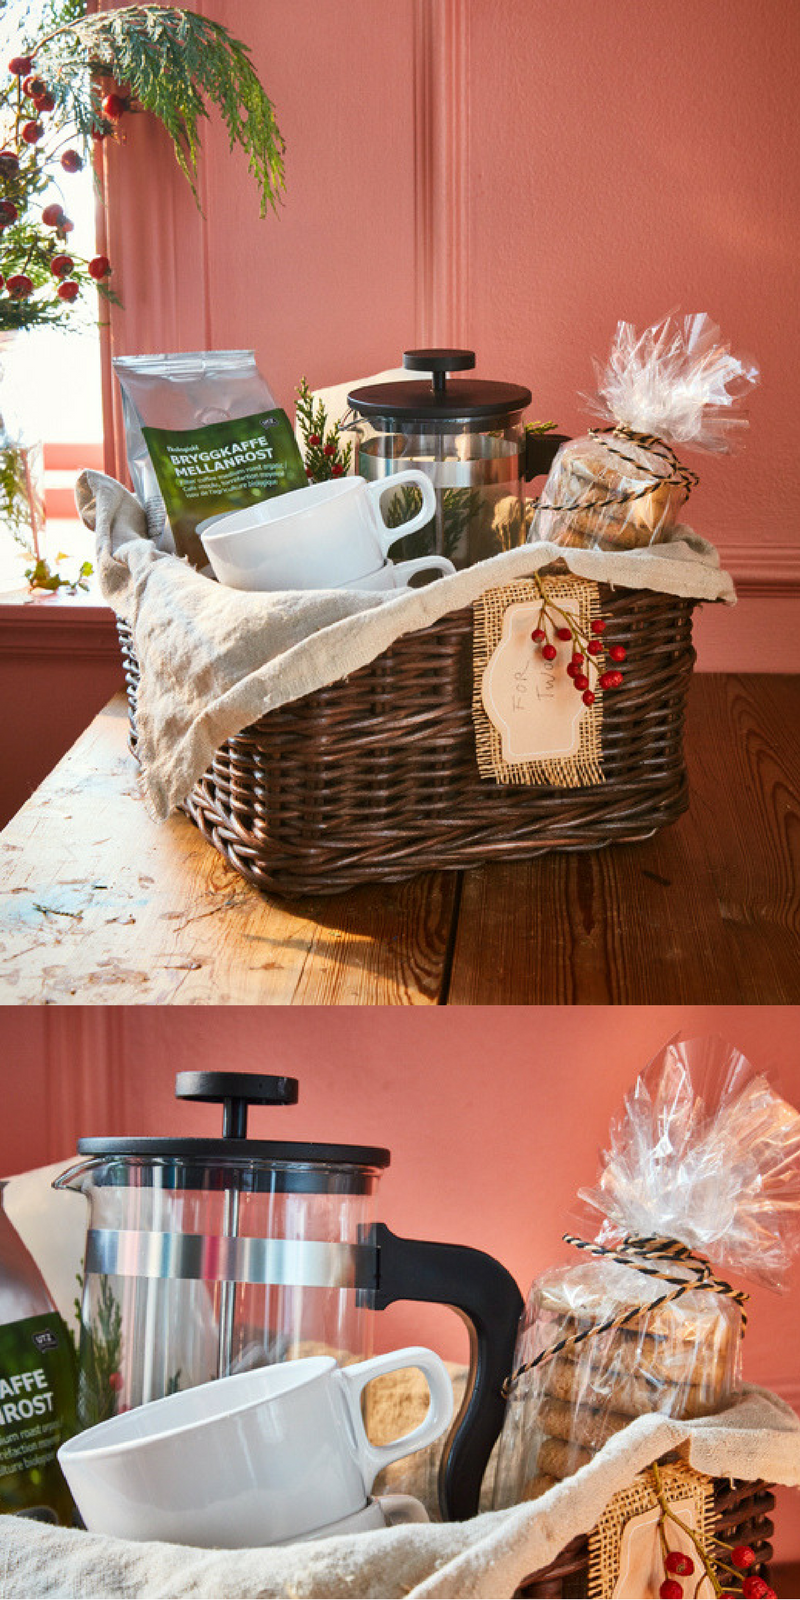 Her finner du gaveideer til jul, slik at du kan gi foreldrene dine den beste kaffegleden i gave